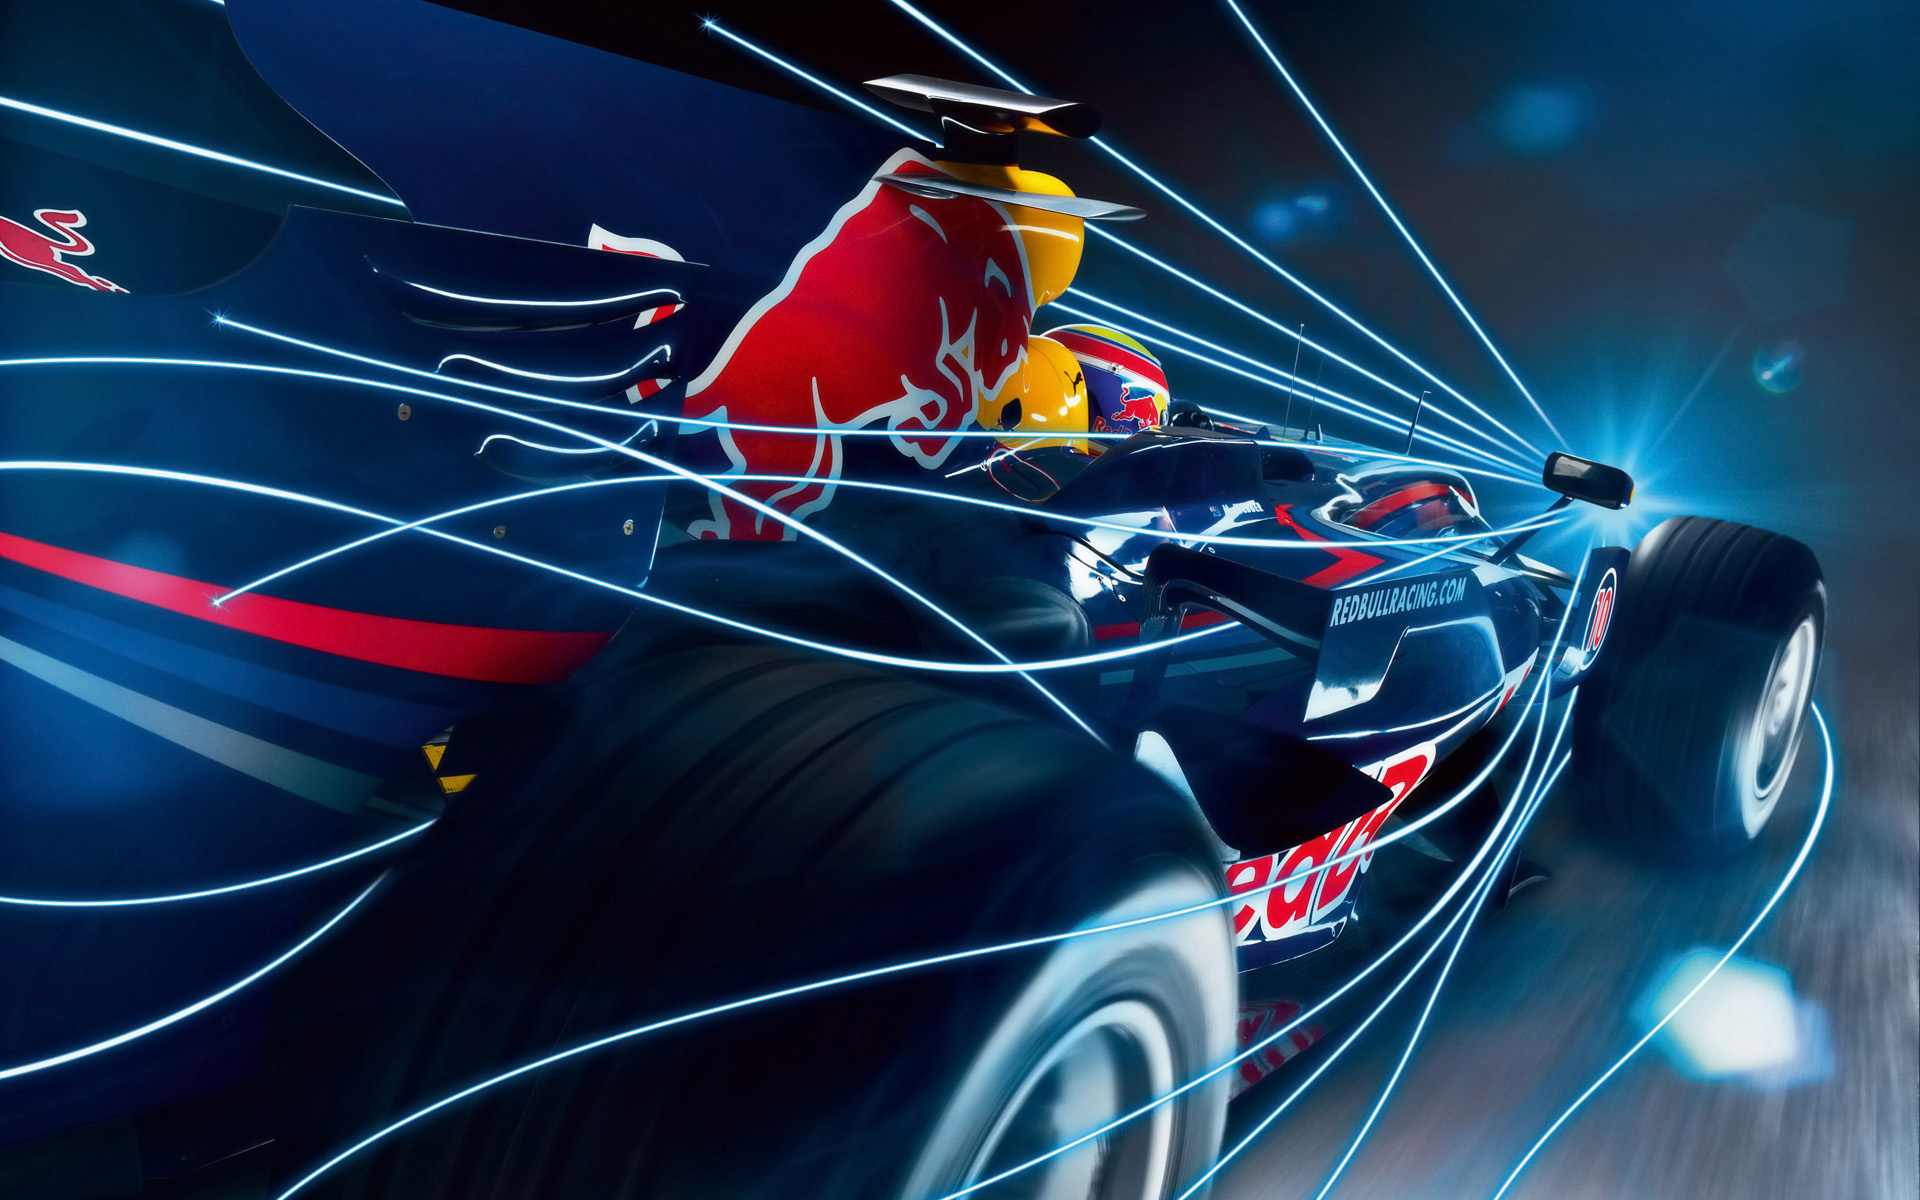  2008 Red Bull Racing RB4  Wallpaper.